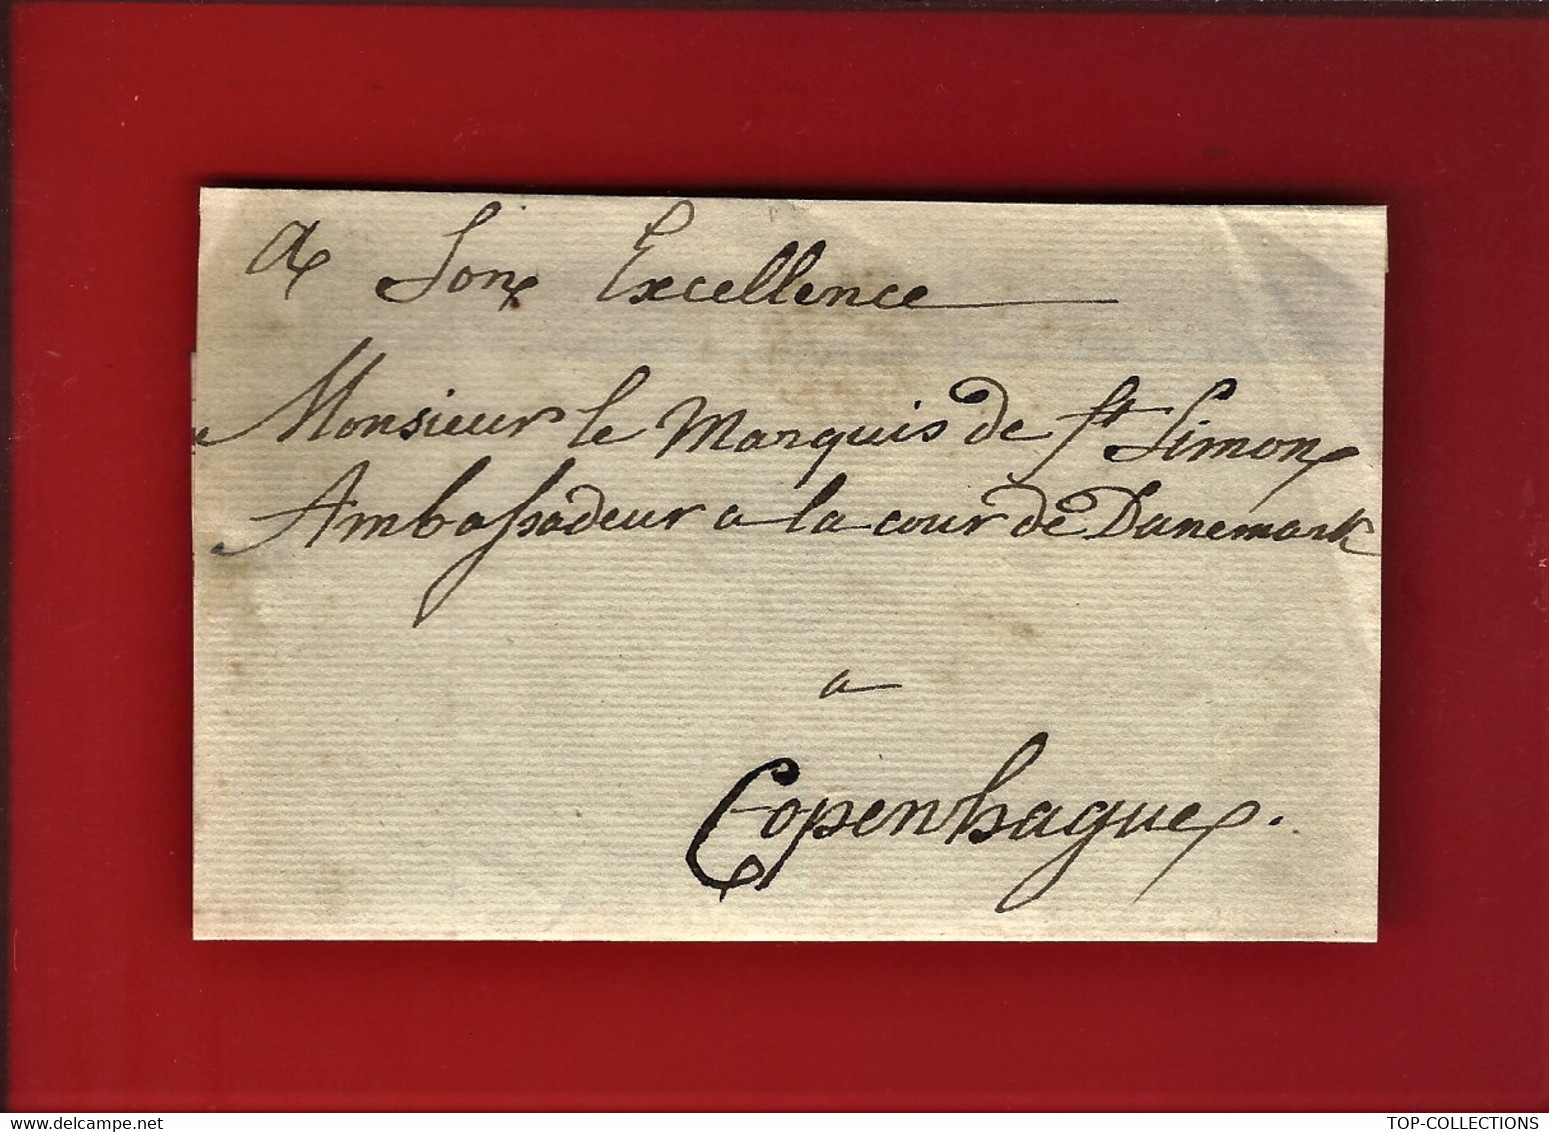 Circa 1820  PARTIE DE LETTRE Son Excellence Marquis De St Simon AMBASSADEUR à La Cour Du Danemark Copenhague - Documentos Históricos